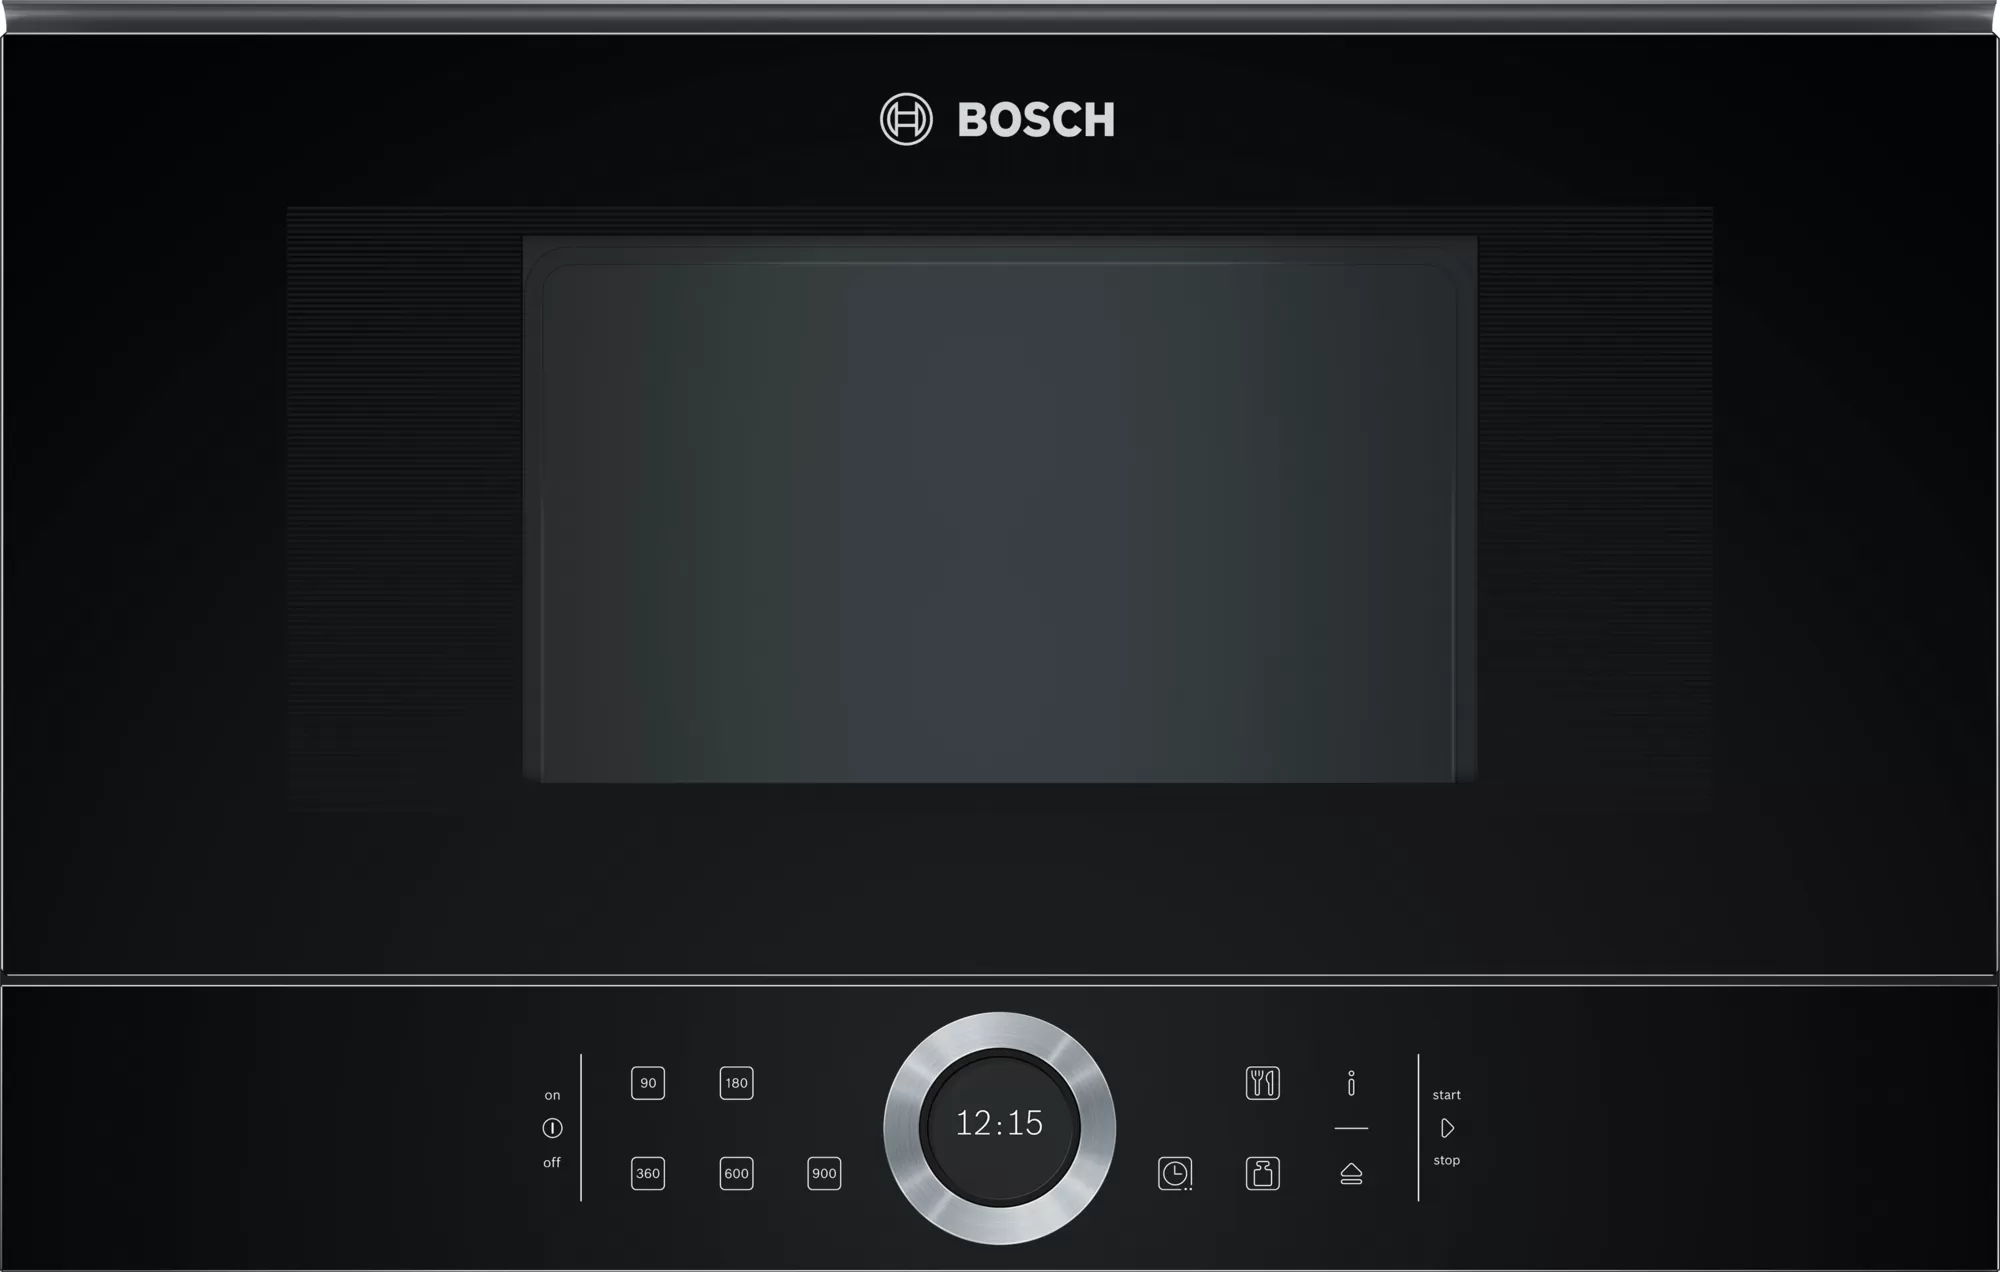 Lò vi sóng Bosch BFL634GB1B